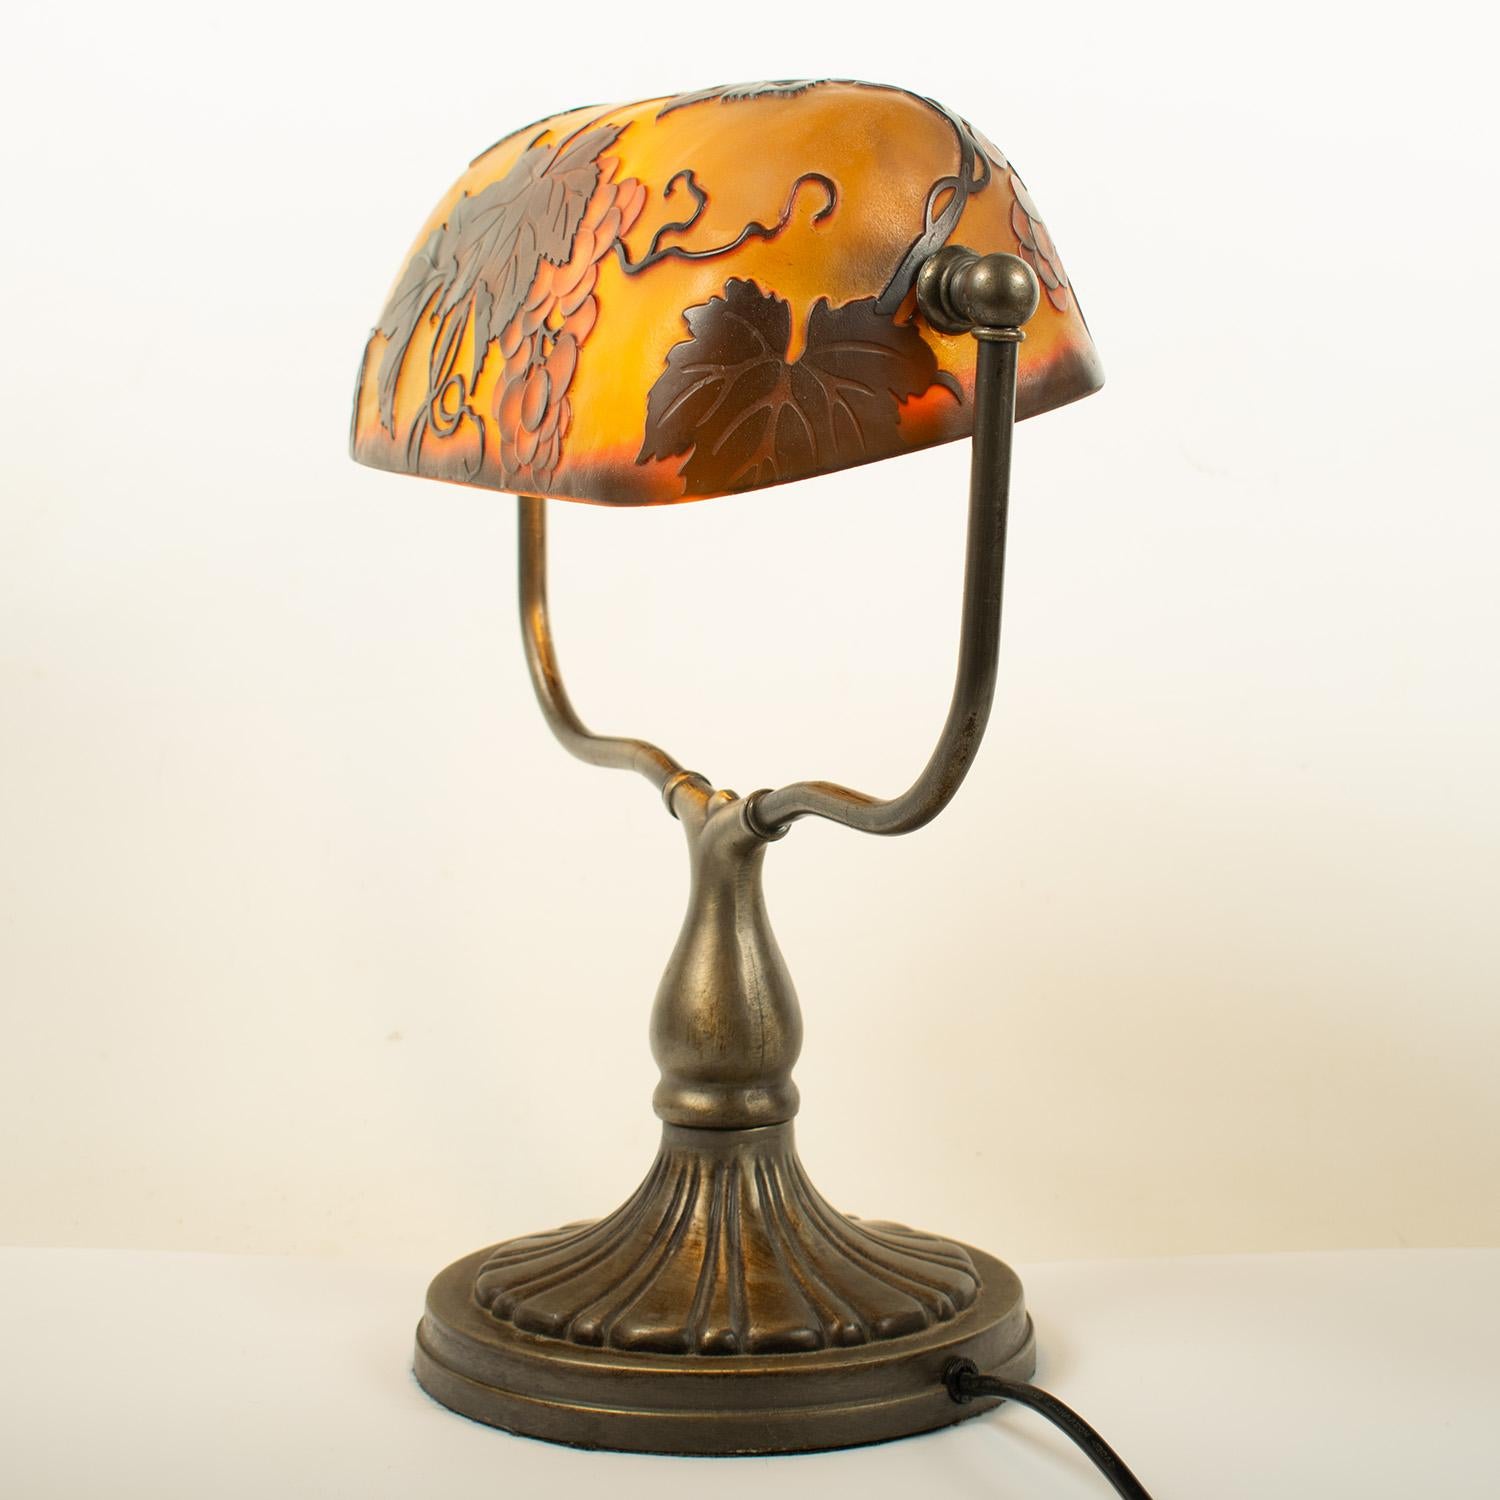 Jugendstil-Schreibtischlampe im Stil von Emile GALLE, Lampenschirm aus mehrschichtigem Glas mit geätztem Dekor aus Weinrebenzweigen in gedämpften Gelb-, Orange- und Grüntönen.

Es handelt sich um eine neuere Lampe im Jugendstil, die wahrscheinlich